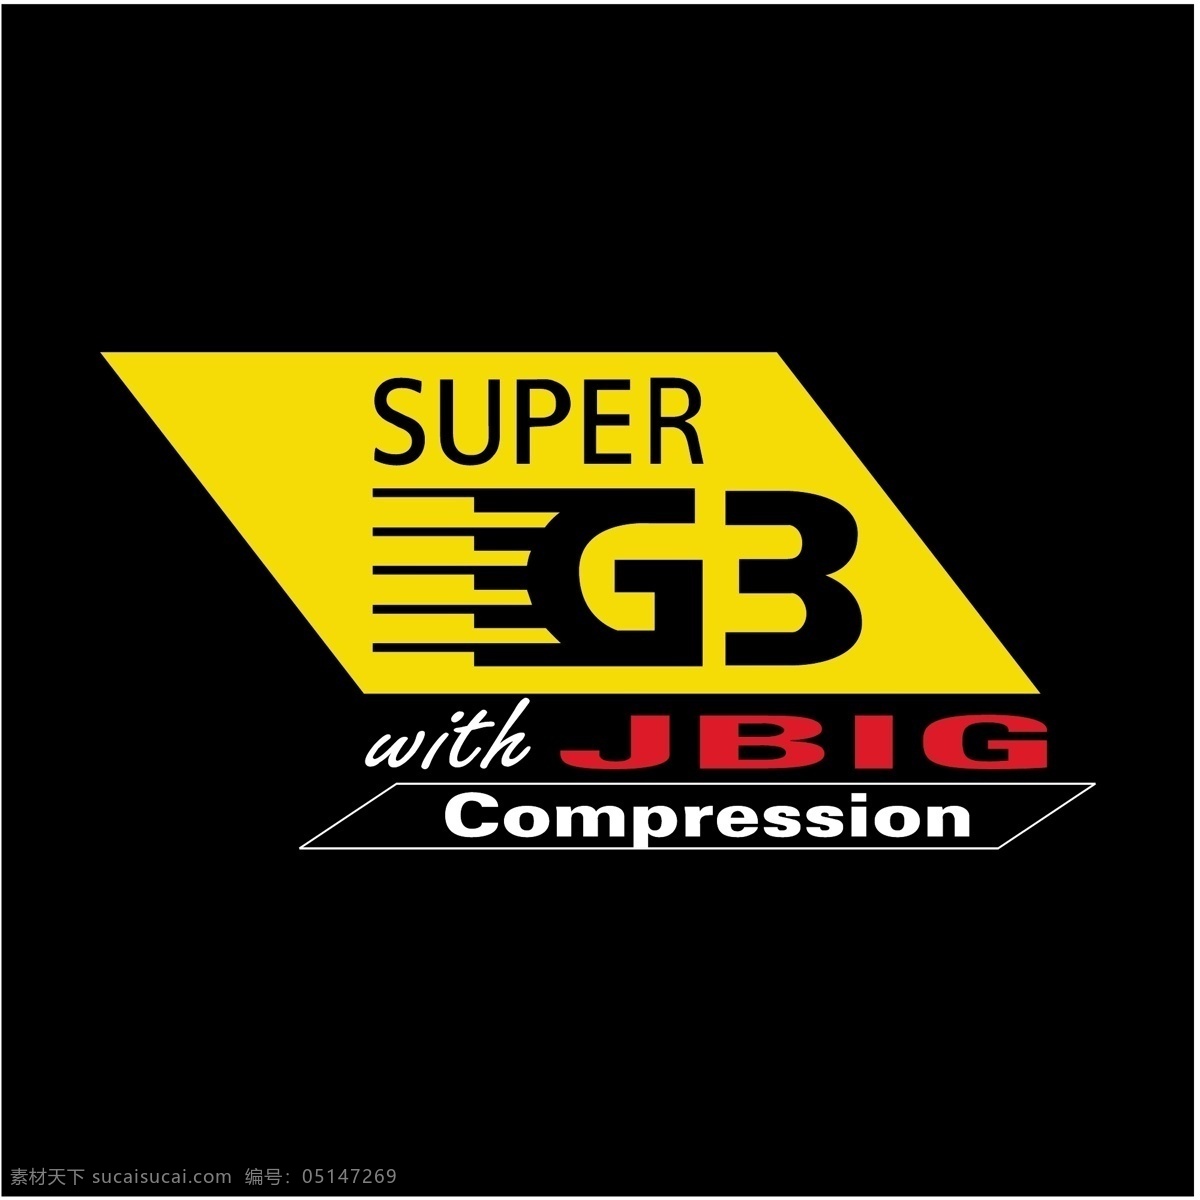 免费 超级 g3 jbig 压缩 标志 自由 黑色